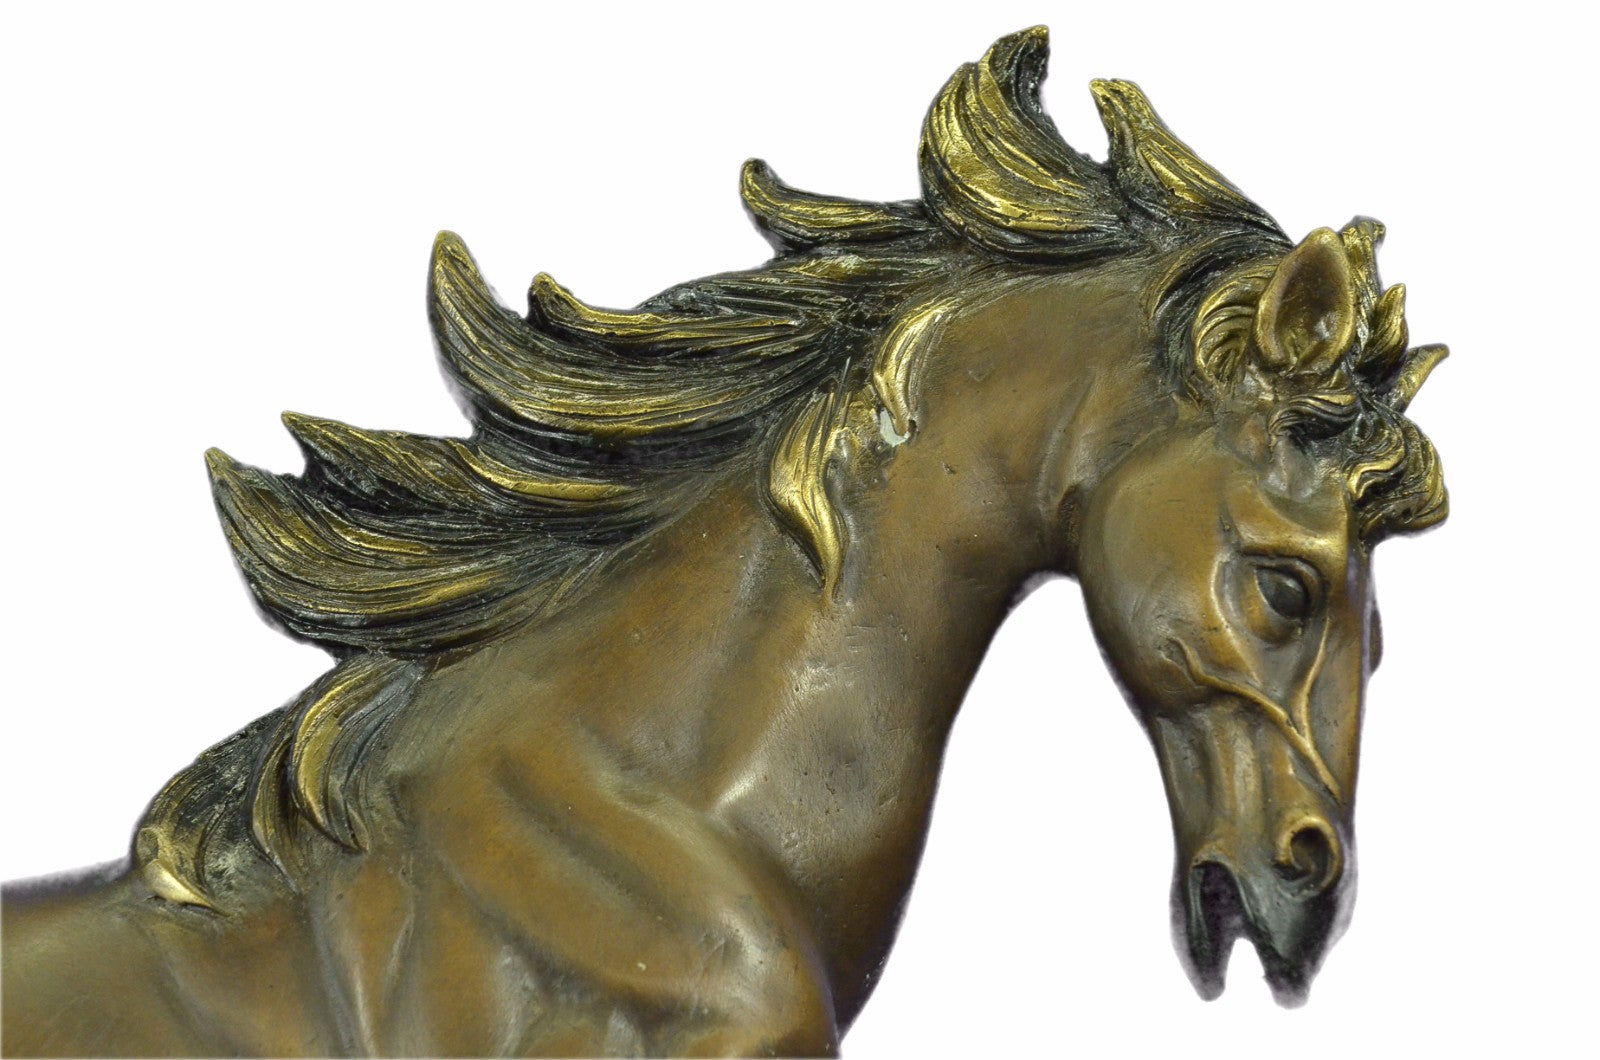 Gorgeous Modern Horse Hot Cast Motion Bronze Sculpture Statue Figurine Art Decor